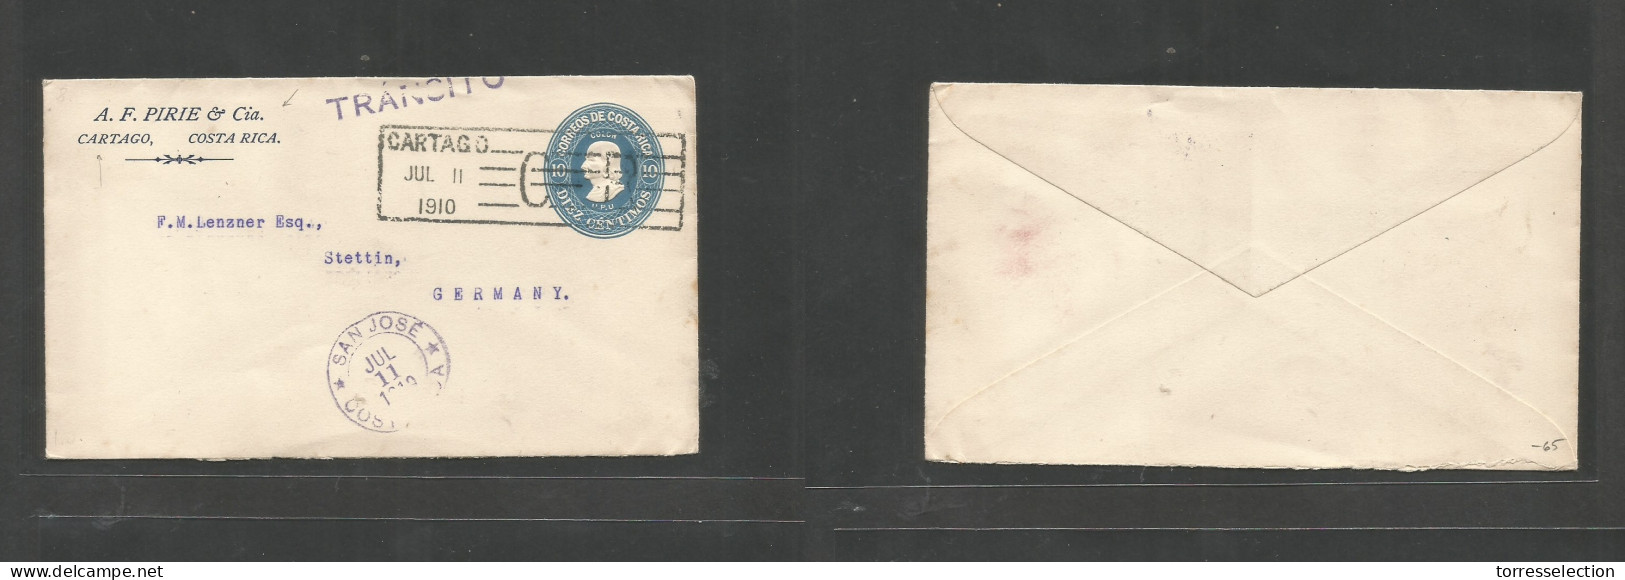 COSTA RICA. 1910 (11 Jly) Cartago - Germany, Stettin. Comercial Private Print 10c Blue, Box Cachet + Transito + San Jose - Costa Rica